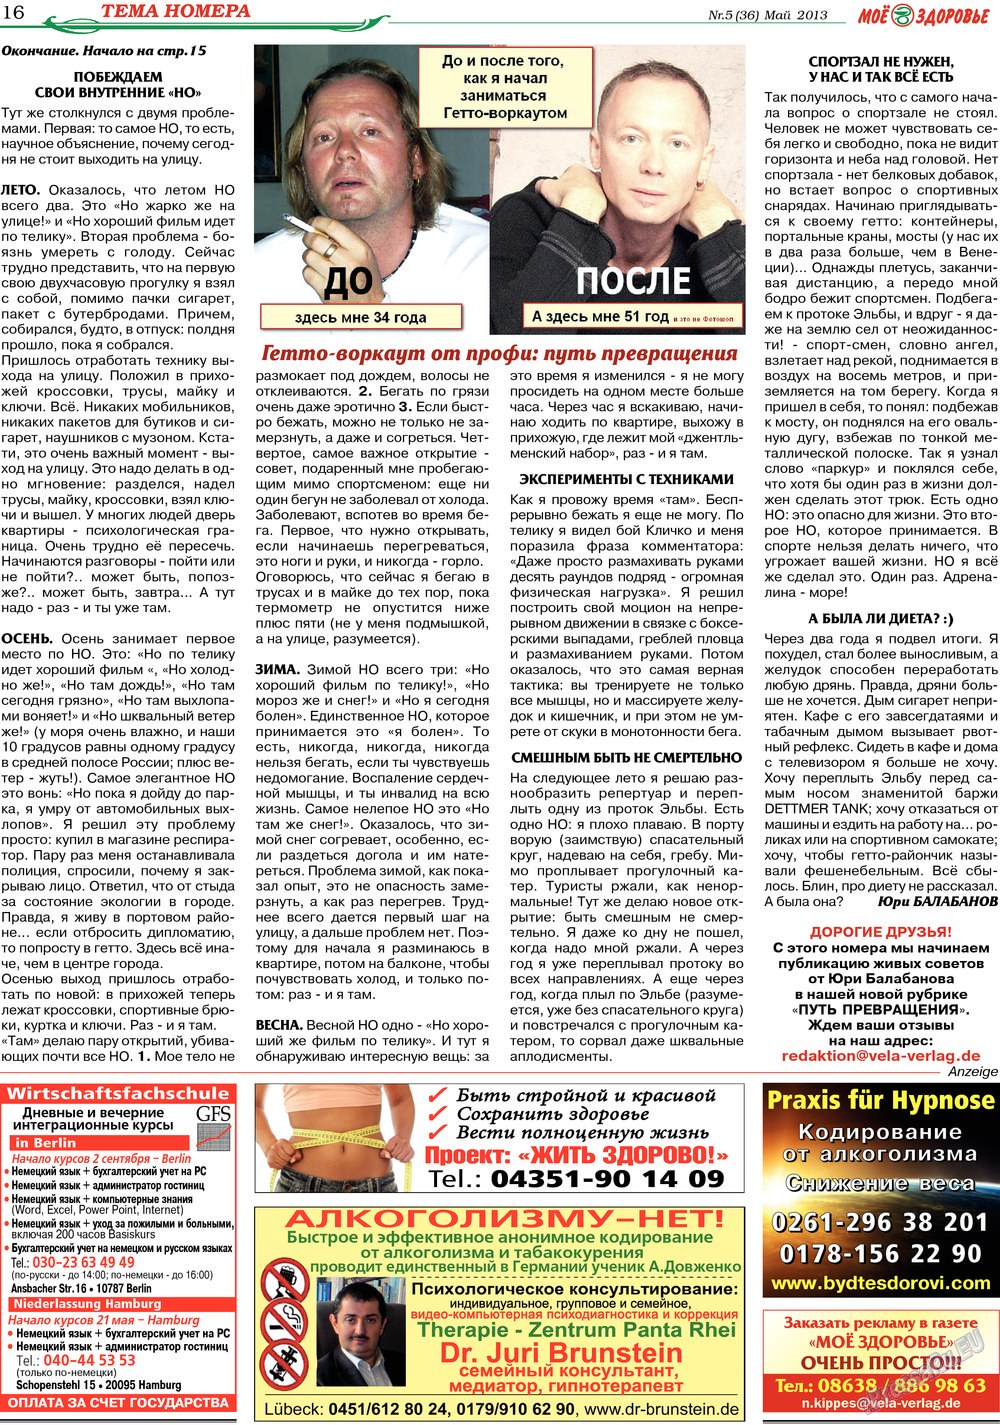 Кругозор, газета. 2013 №5 стр.16